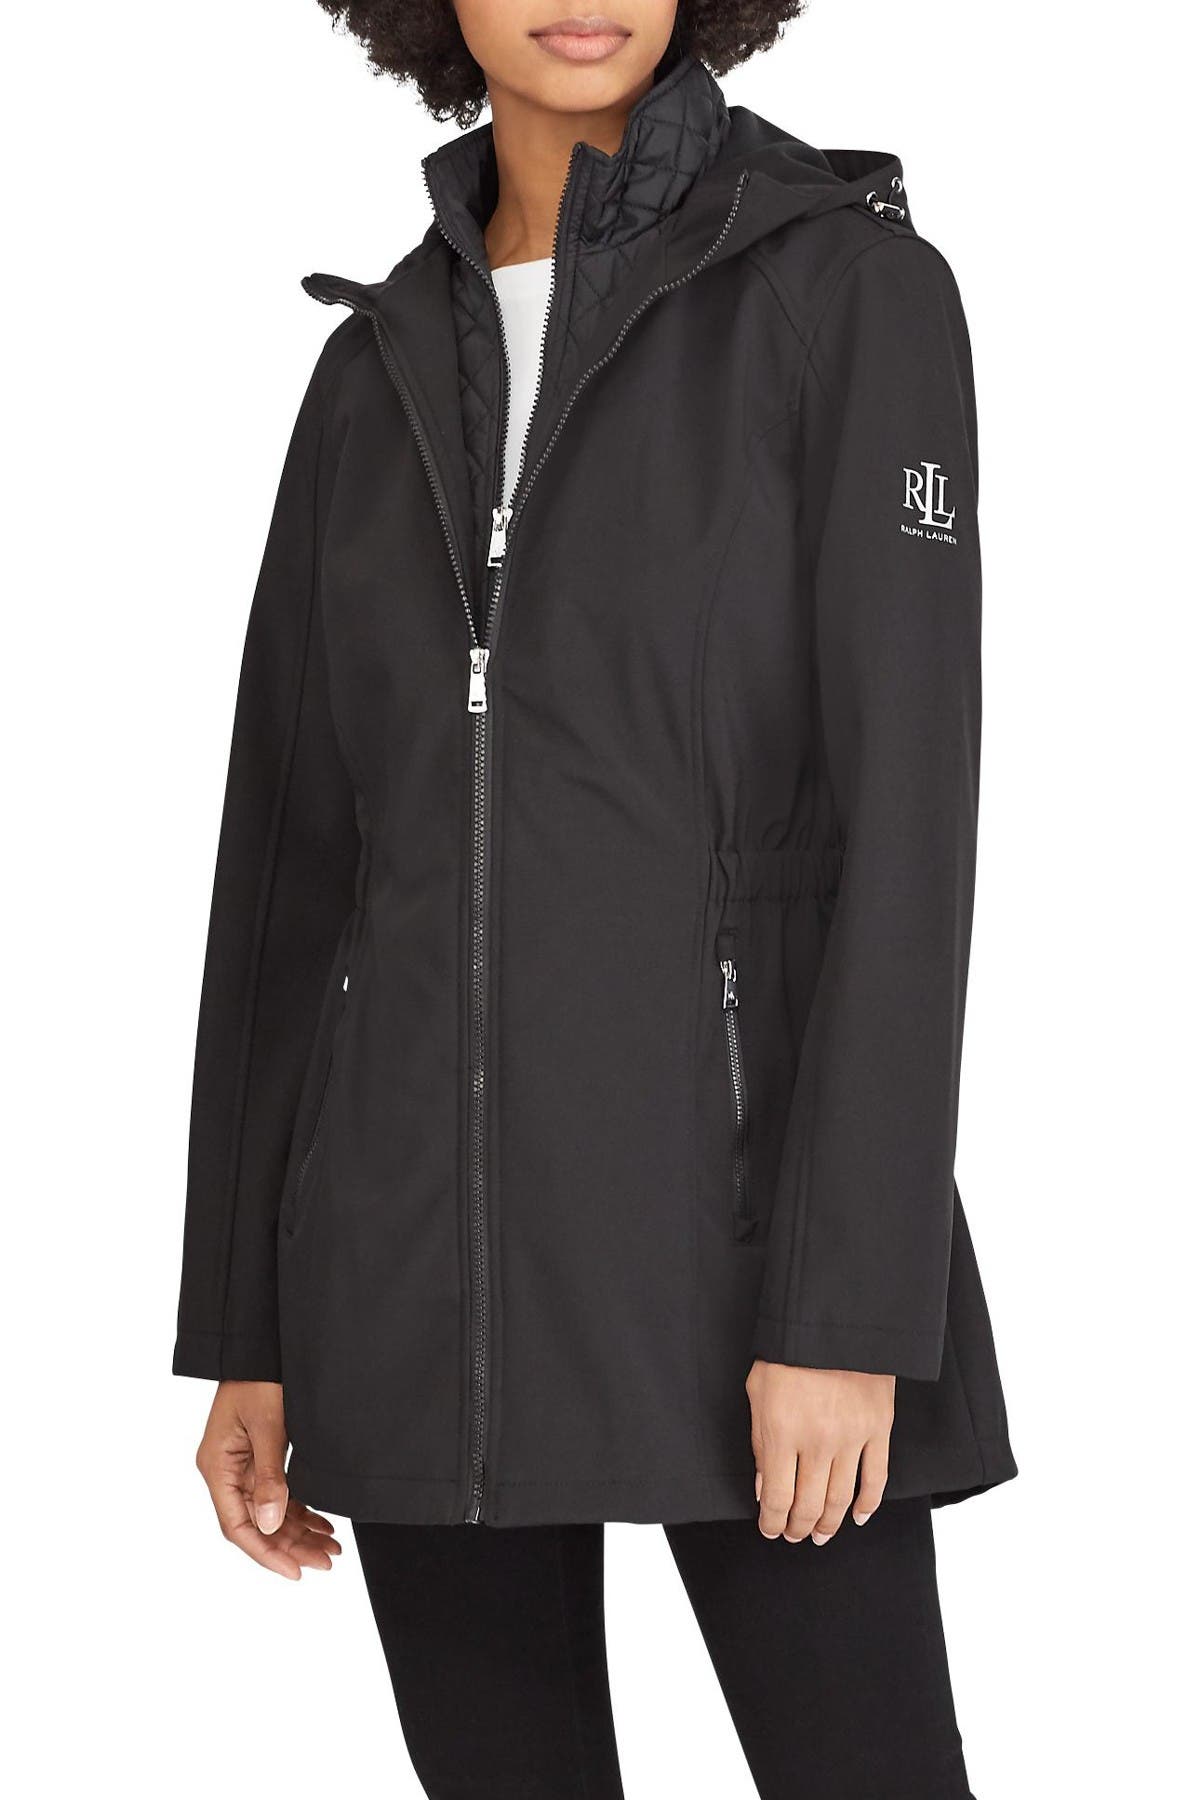 ralph lauren soft shell hooded jacket